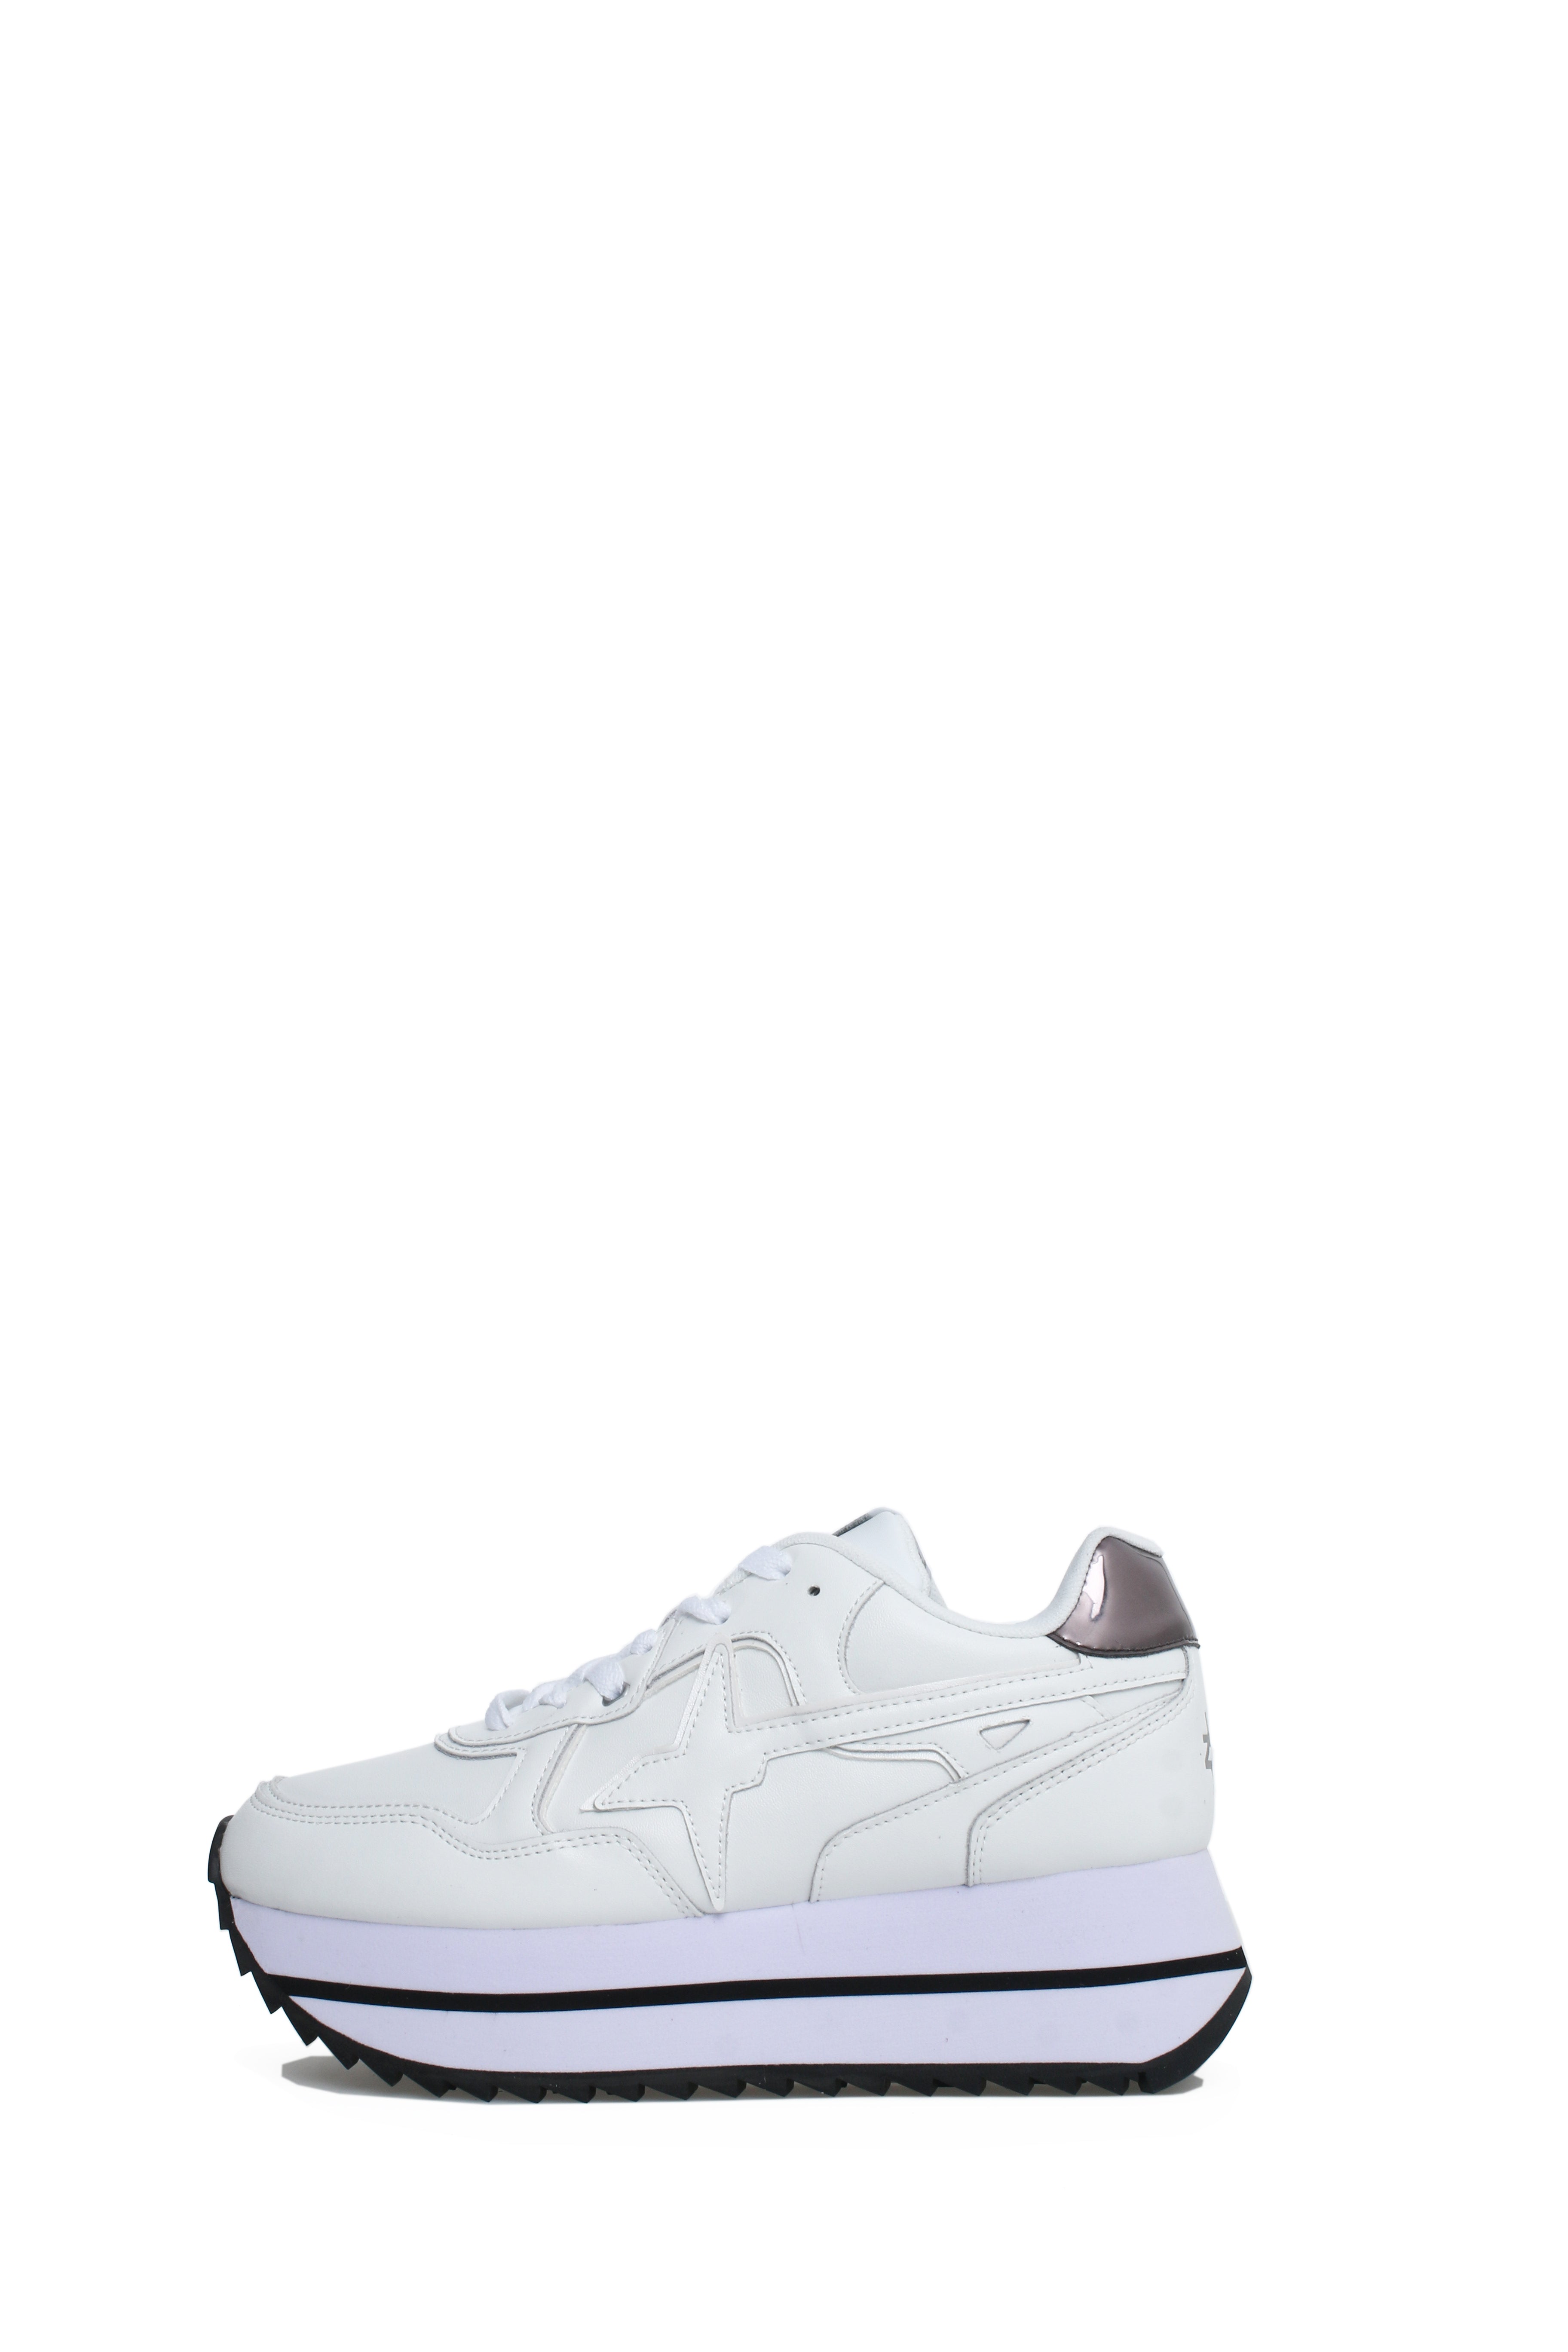 W6yz Sneakers Donna 2017405 07 Bianco.